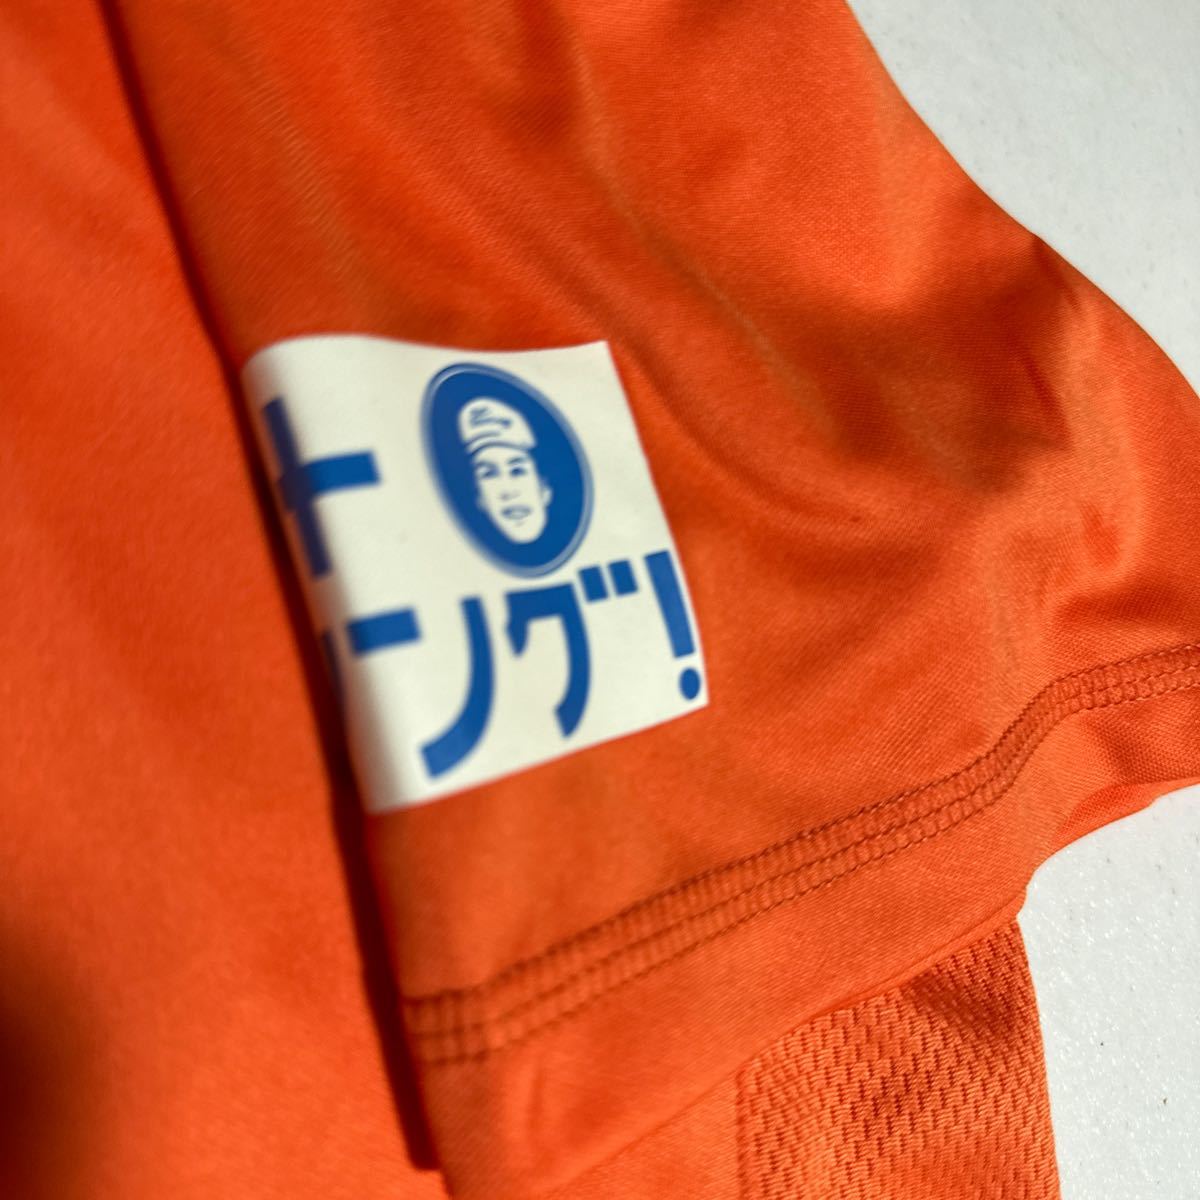 清水エスパルス s-pulse jリーグ jleague 応援用シャツ Mサイズ 旧エンブレム_画像6